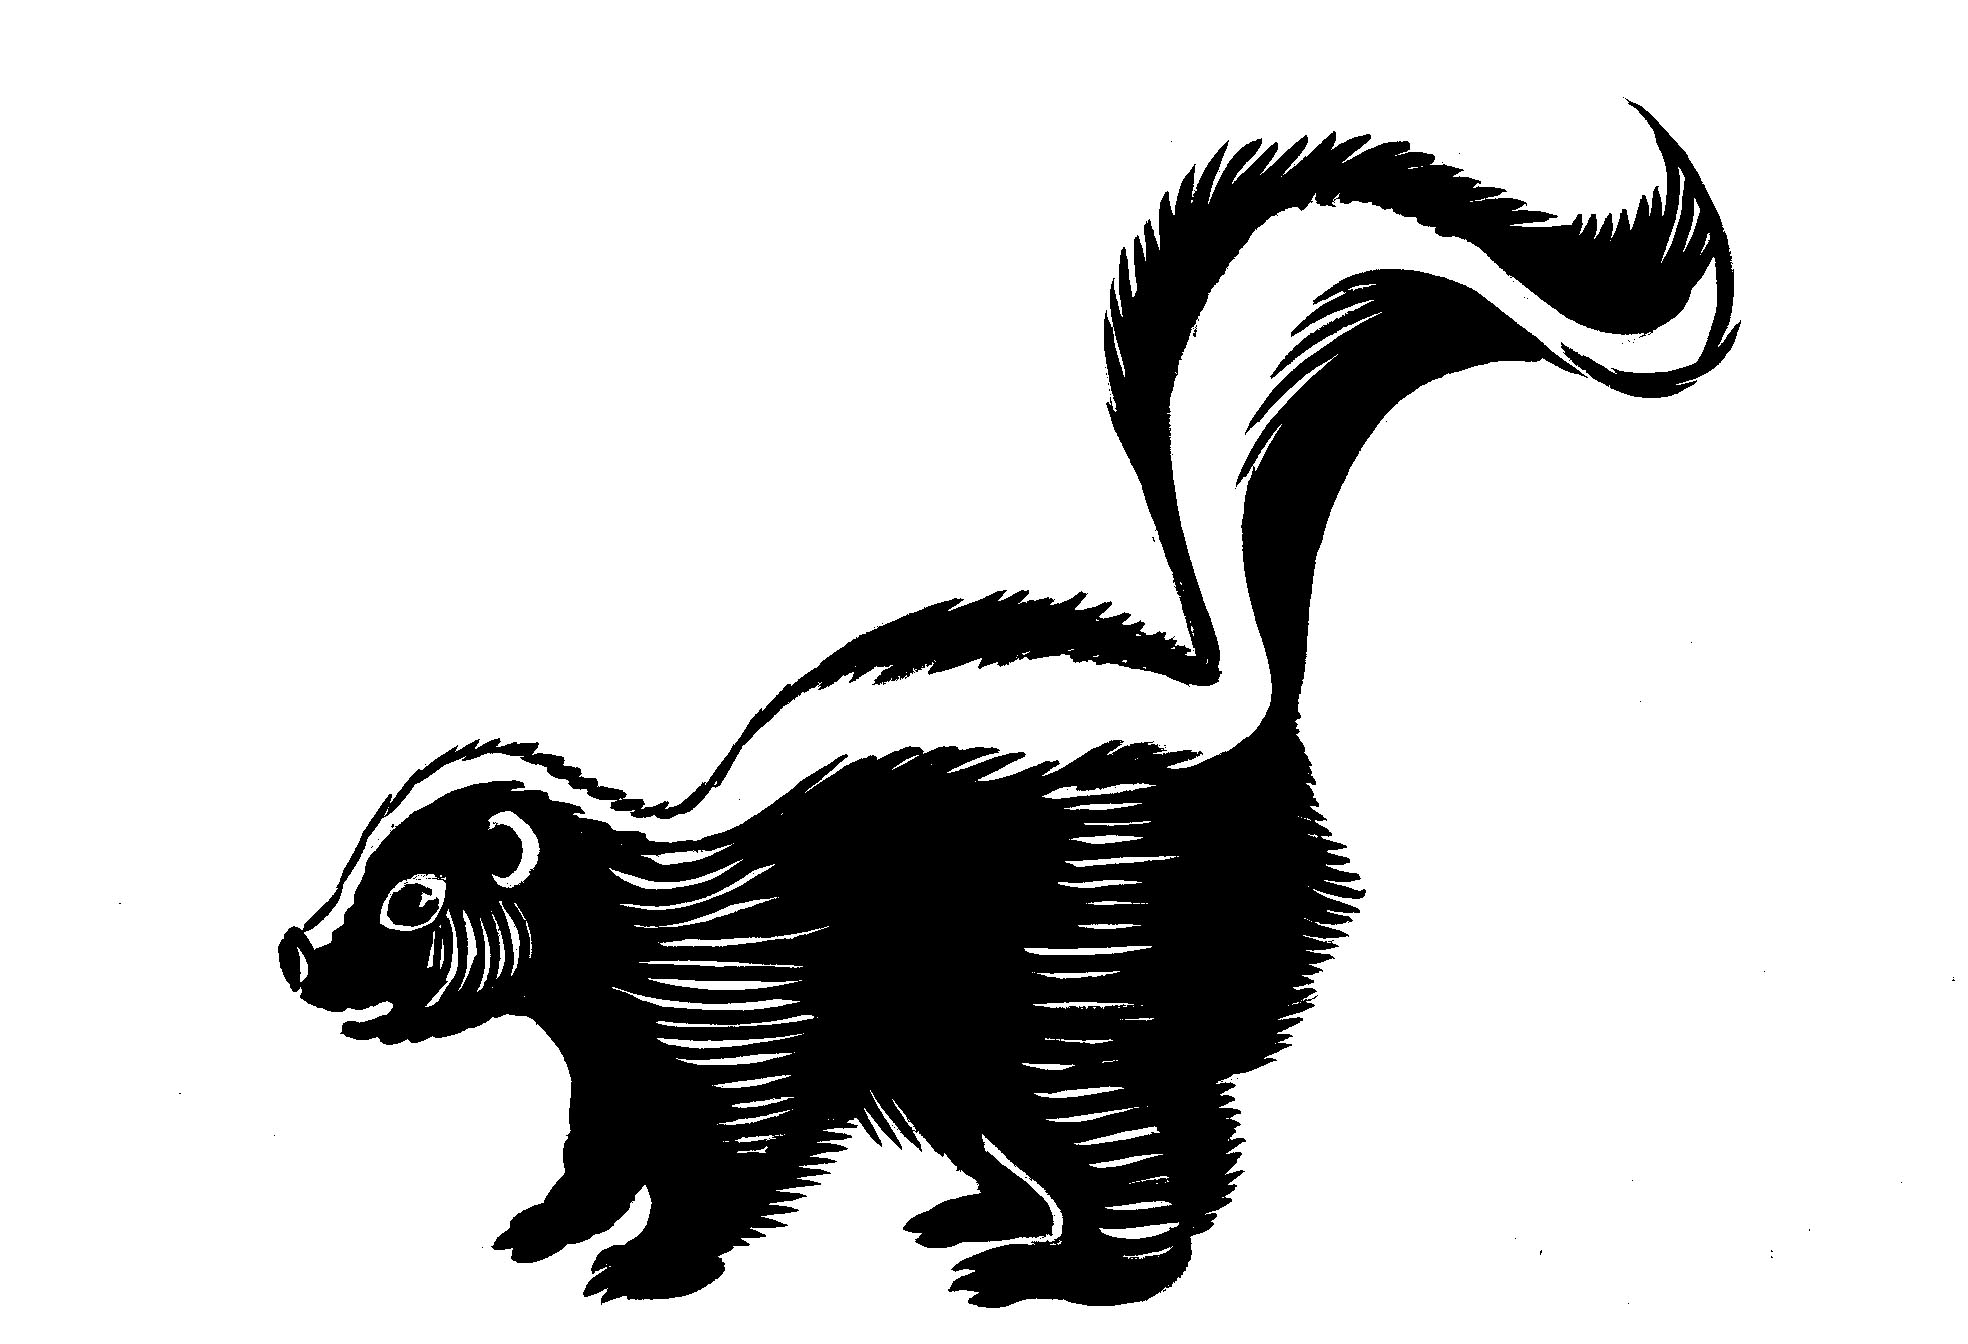 Skunk - Cute skunk